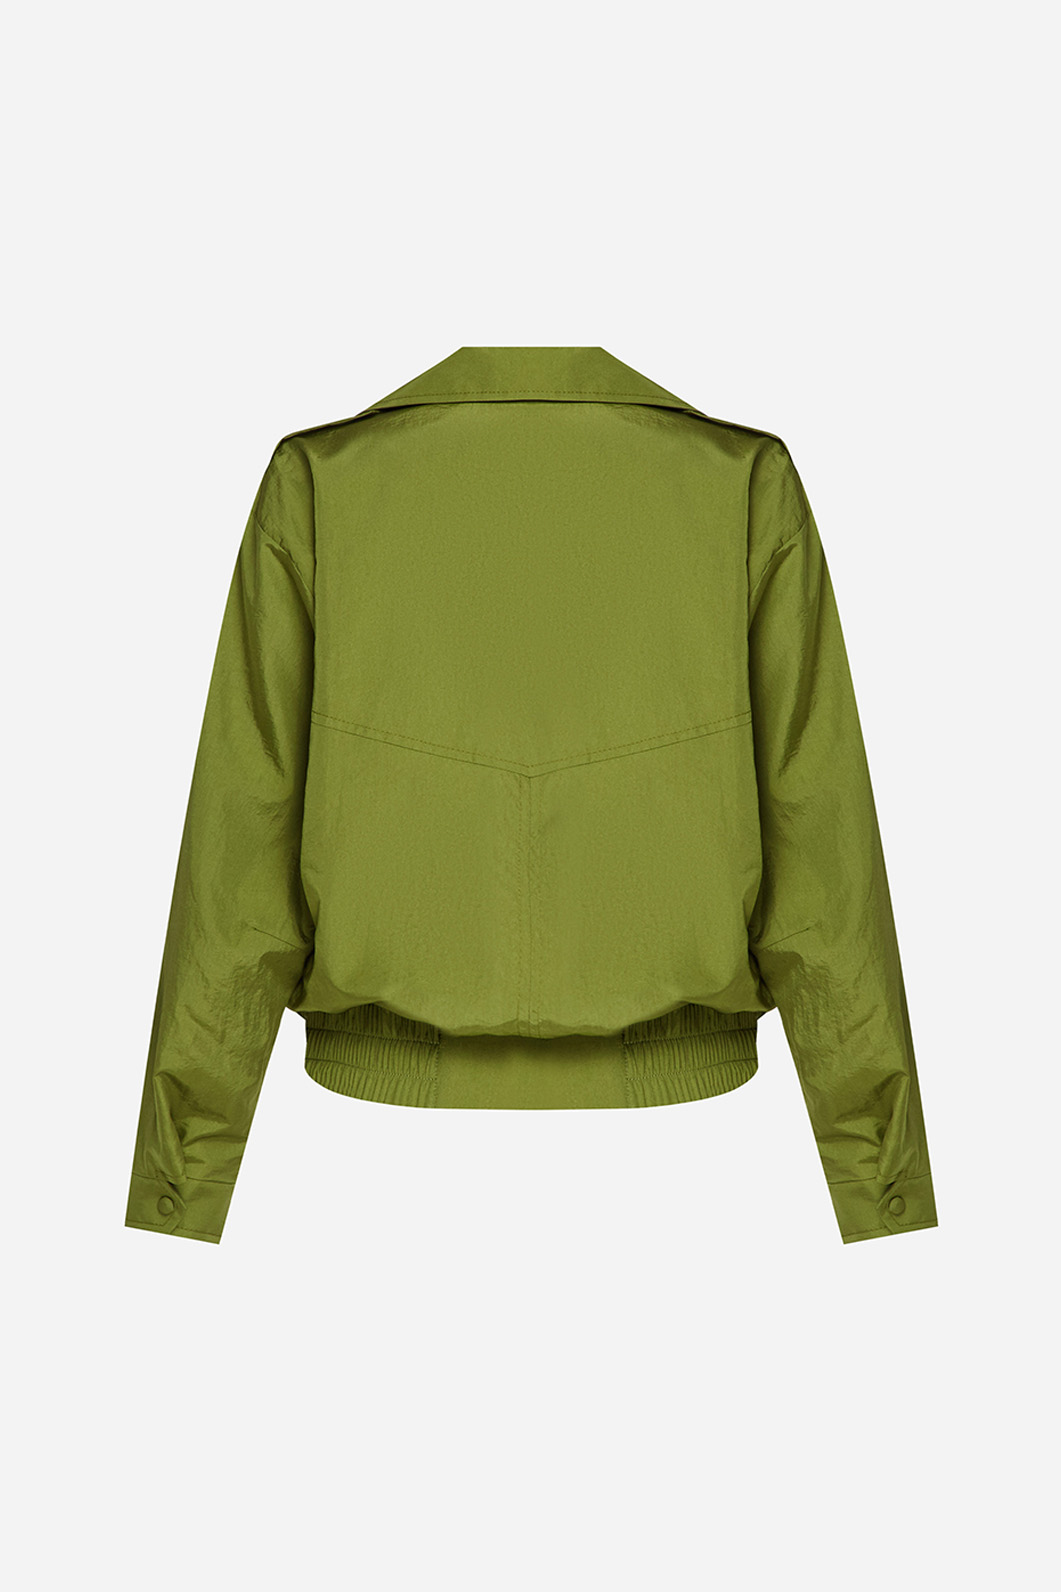 Olive bomber jacket